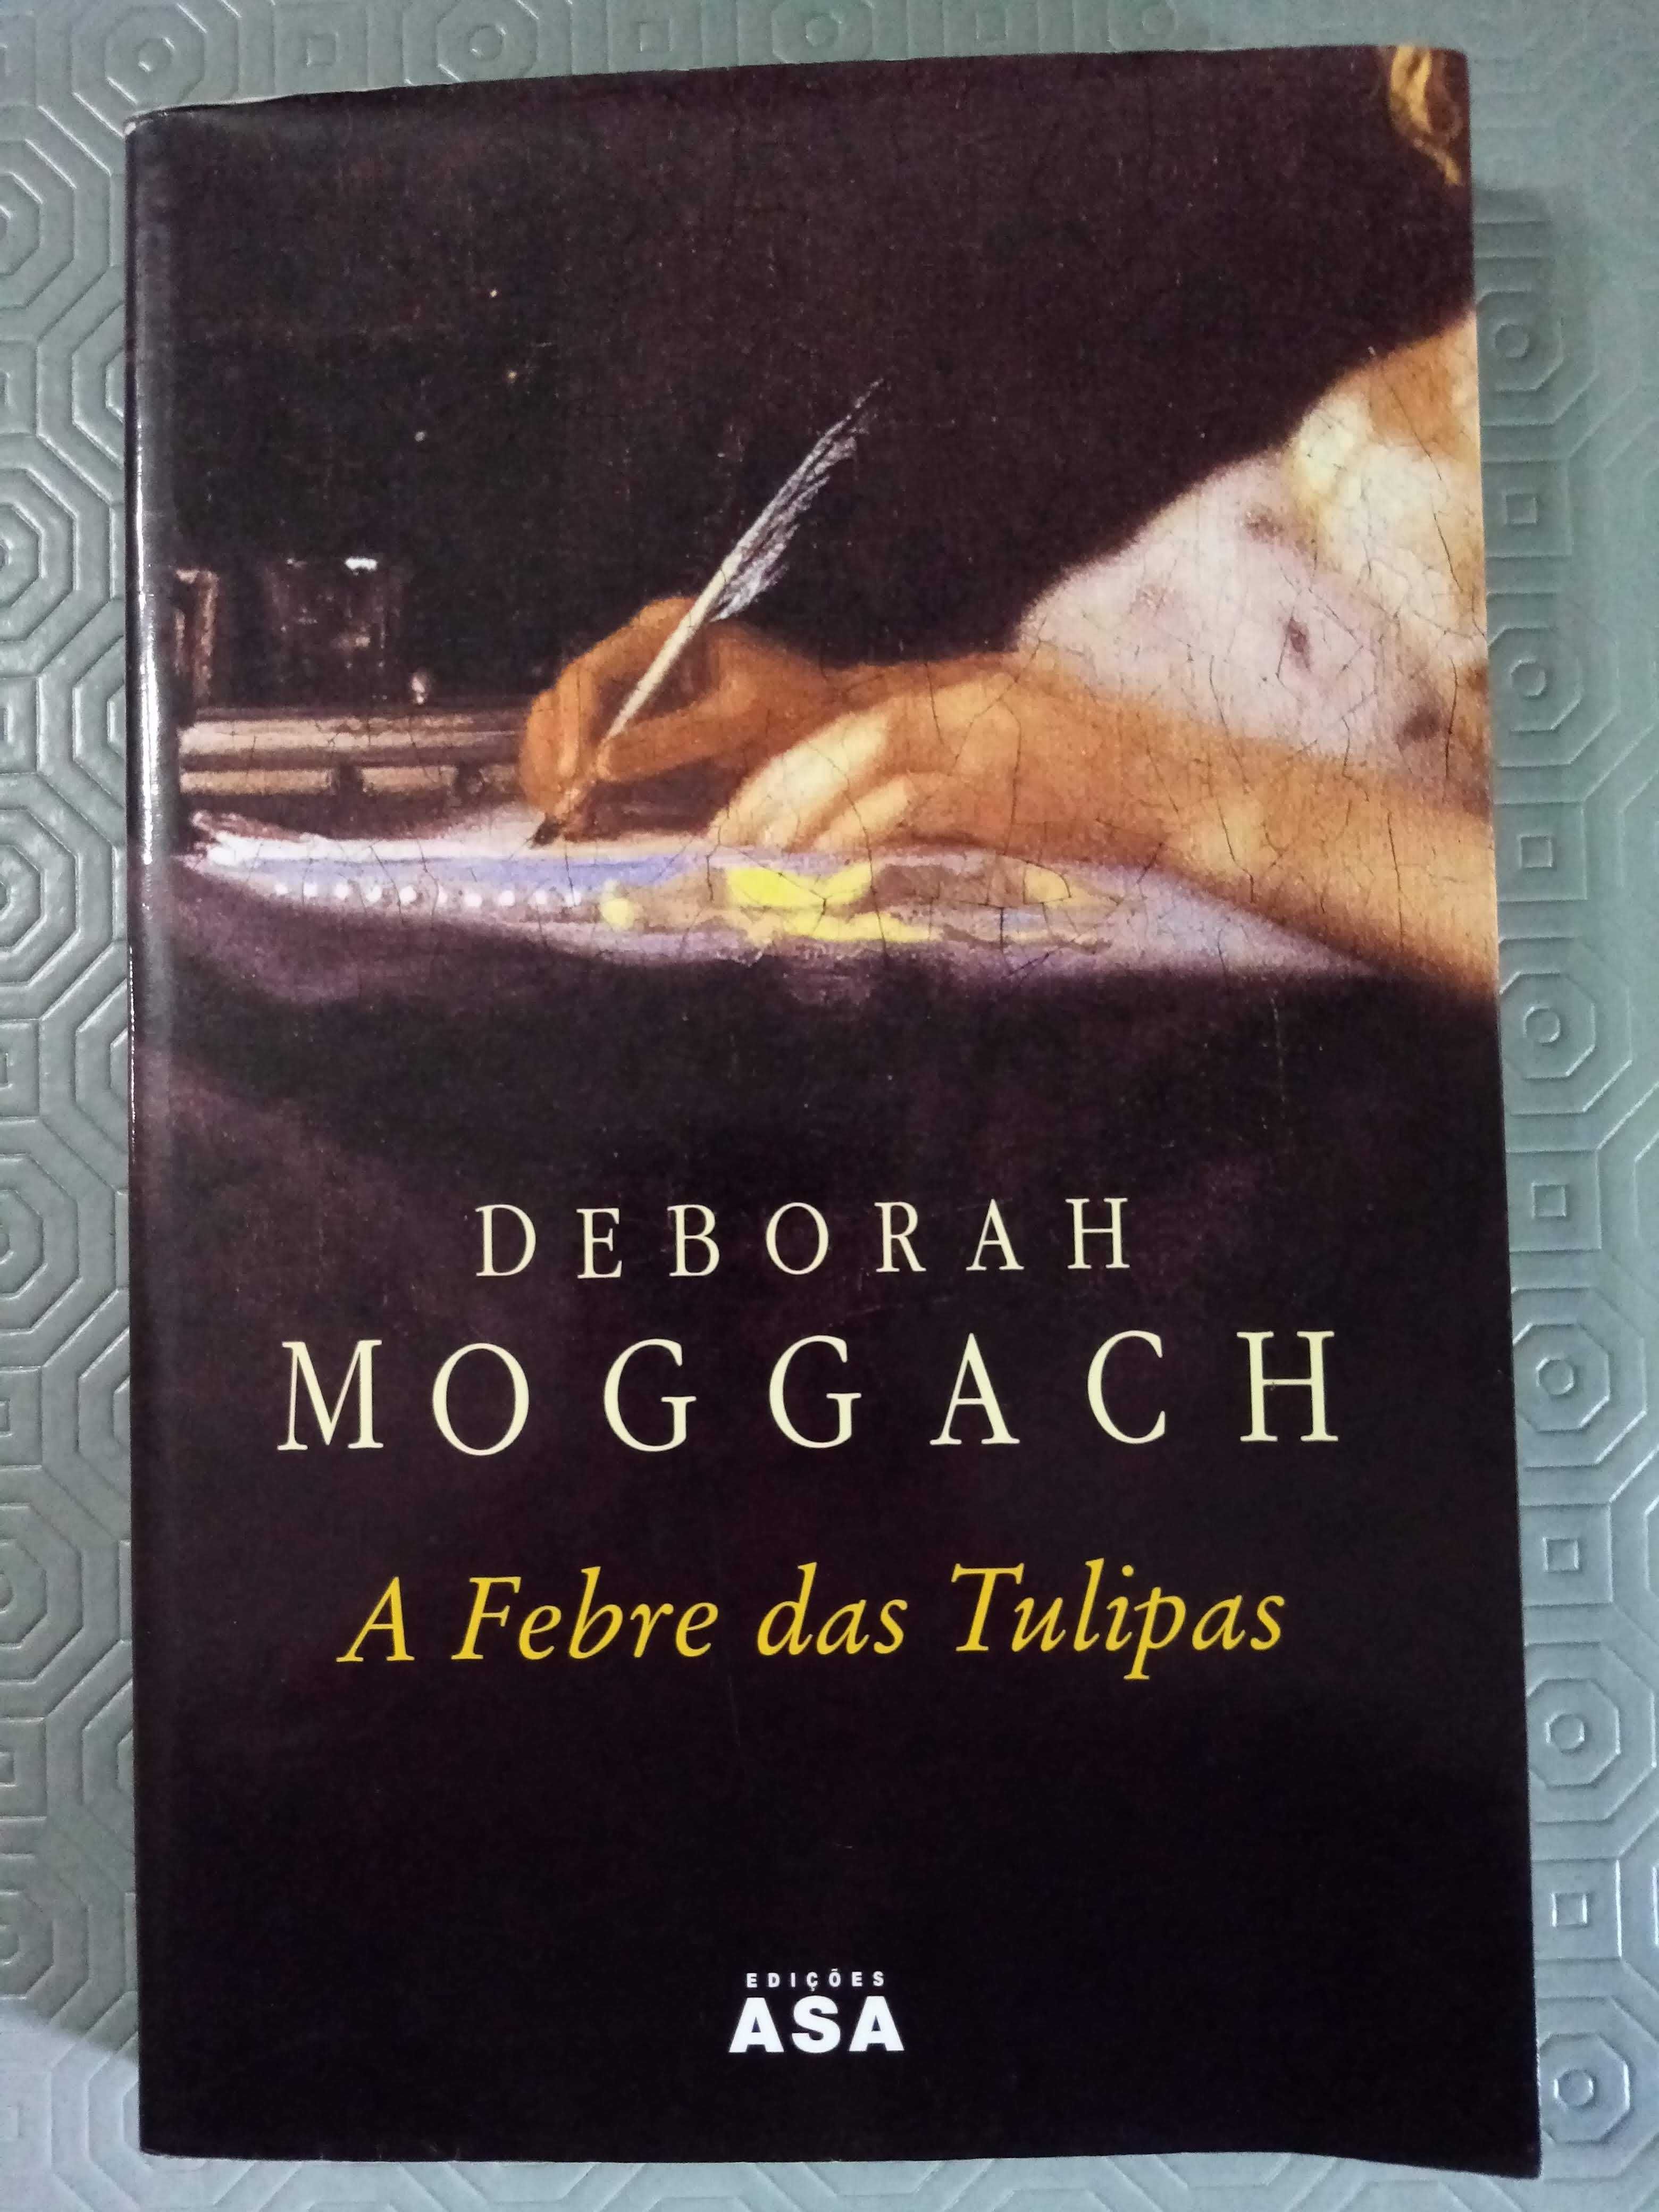 "A Febre das Túlipas" de Deborah Moggach